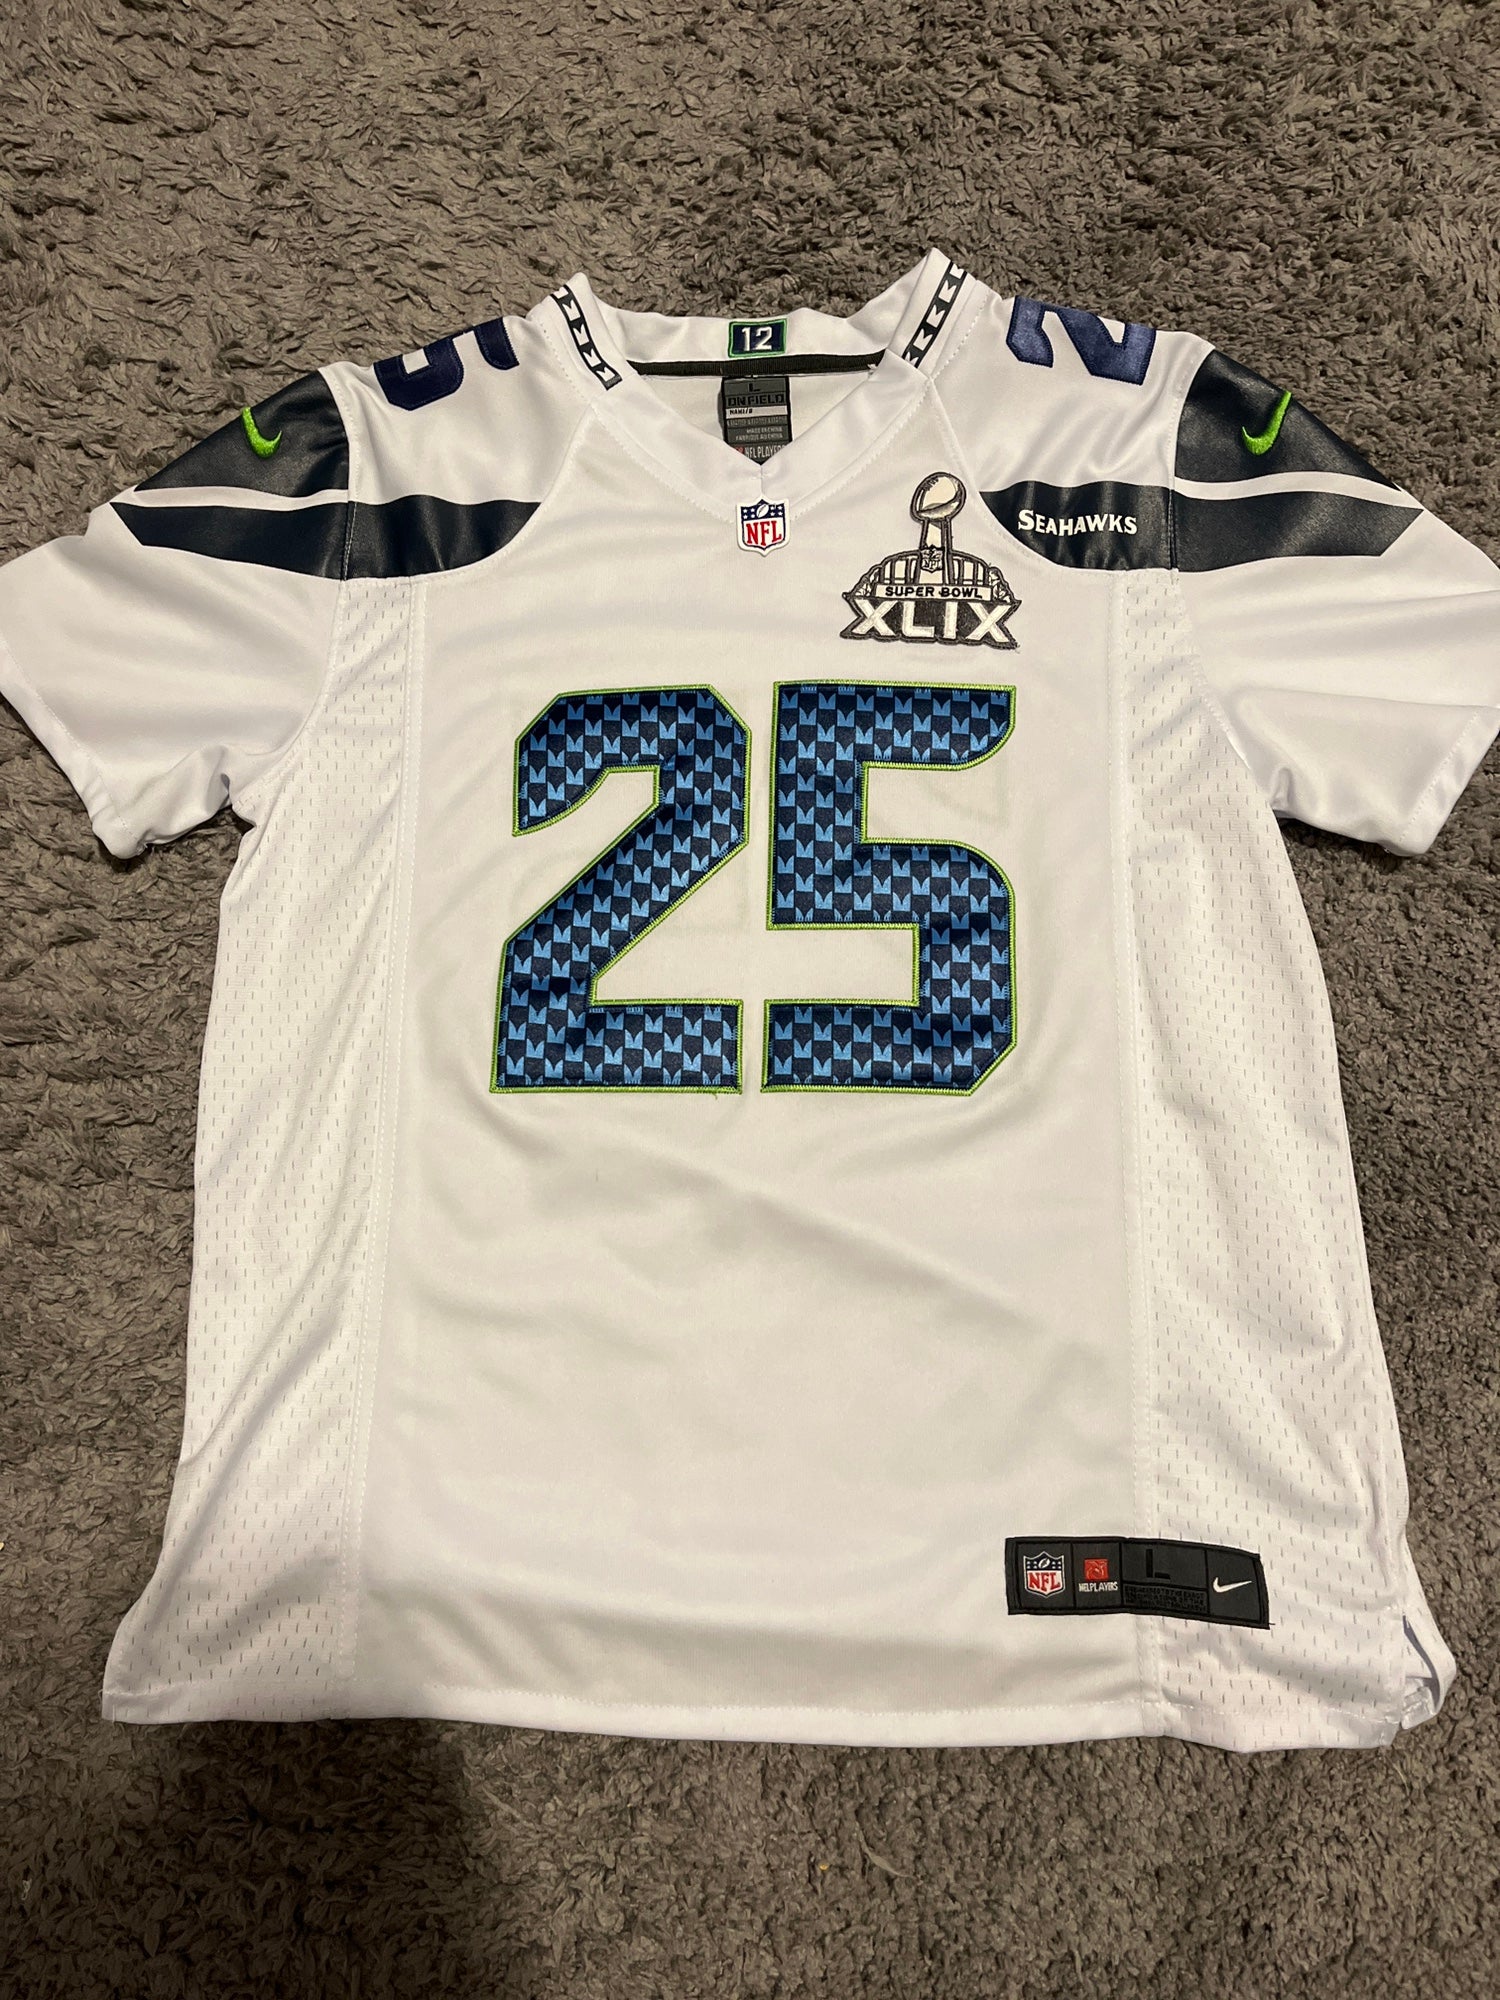 Richard Sherman Seattle Seahawks Super Bowl XLIV Stitched Jersey